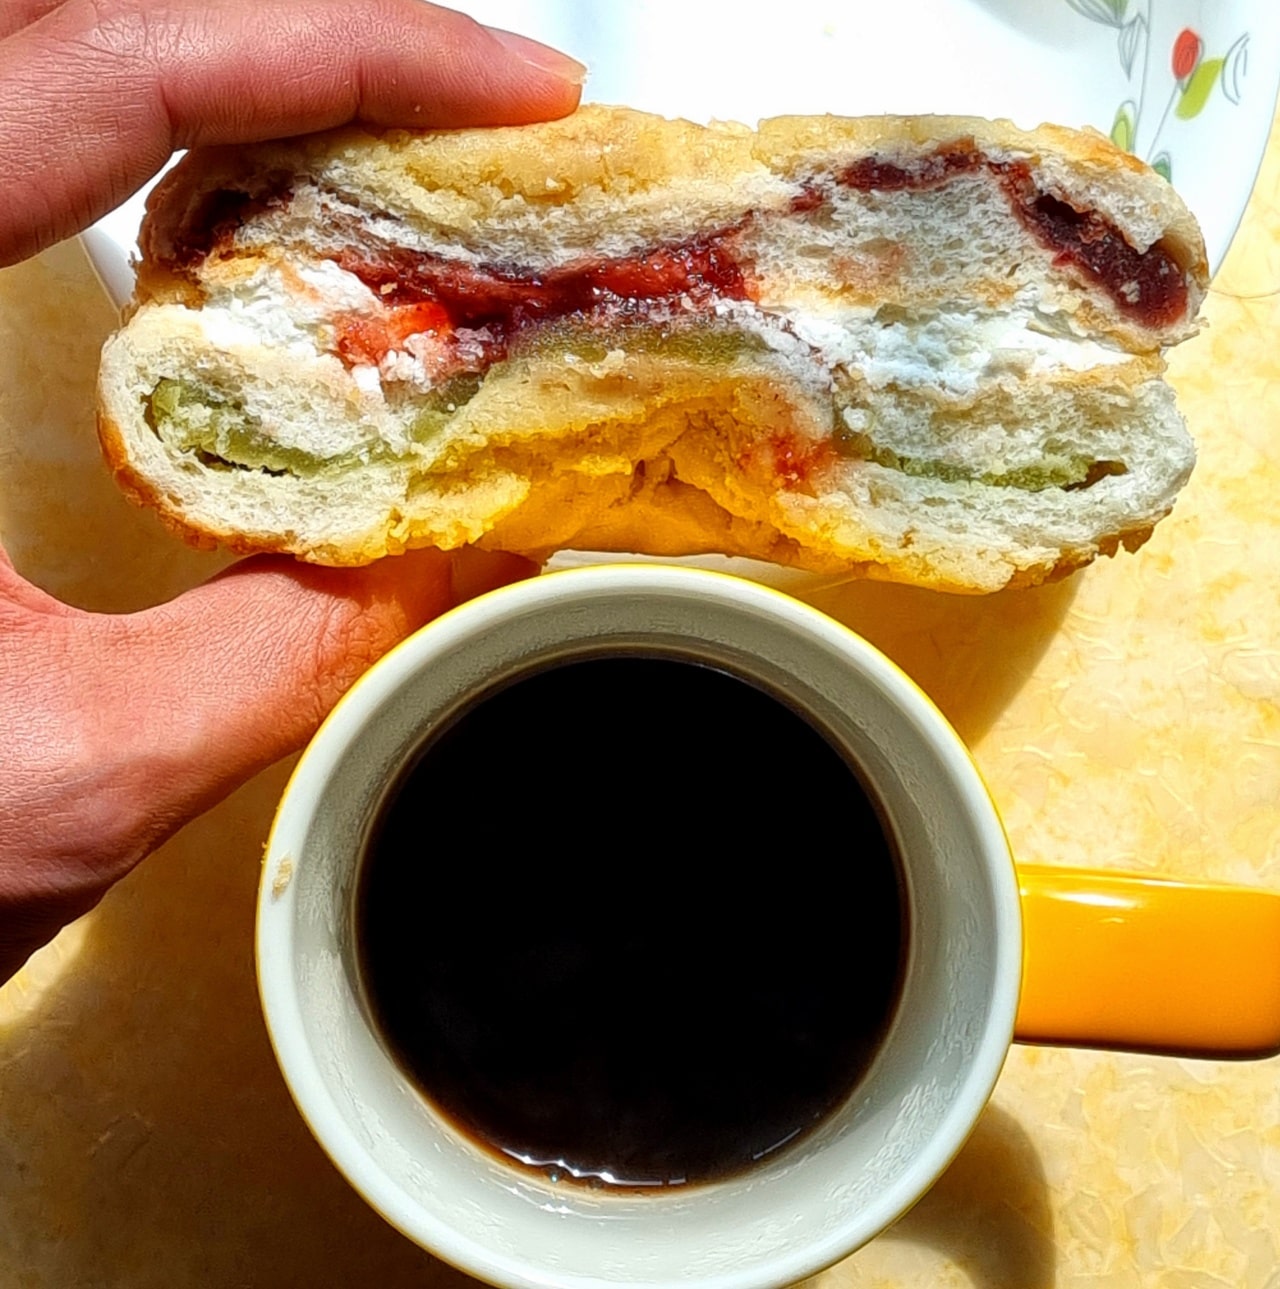 고대 딸기잼 맘모스빵을 드시거든 커피 한 잔과 같이 드세요.